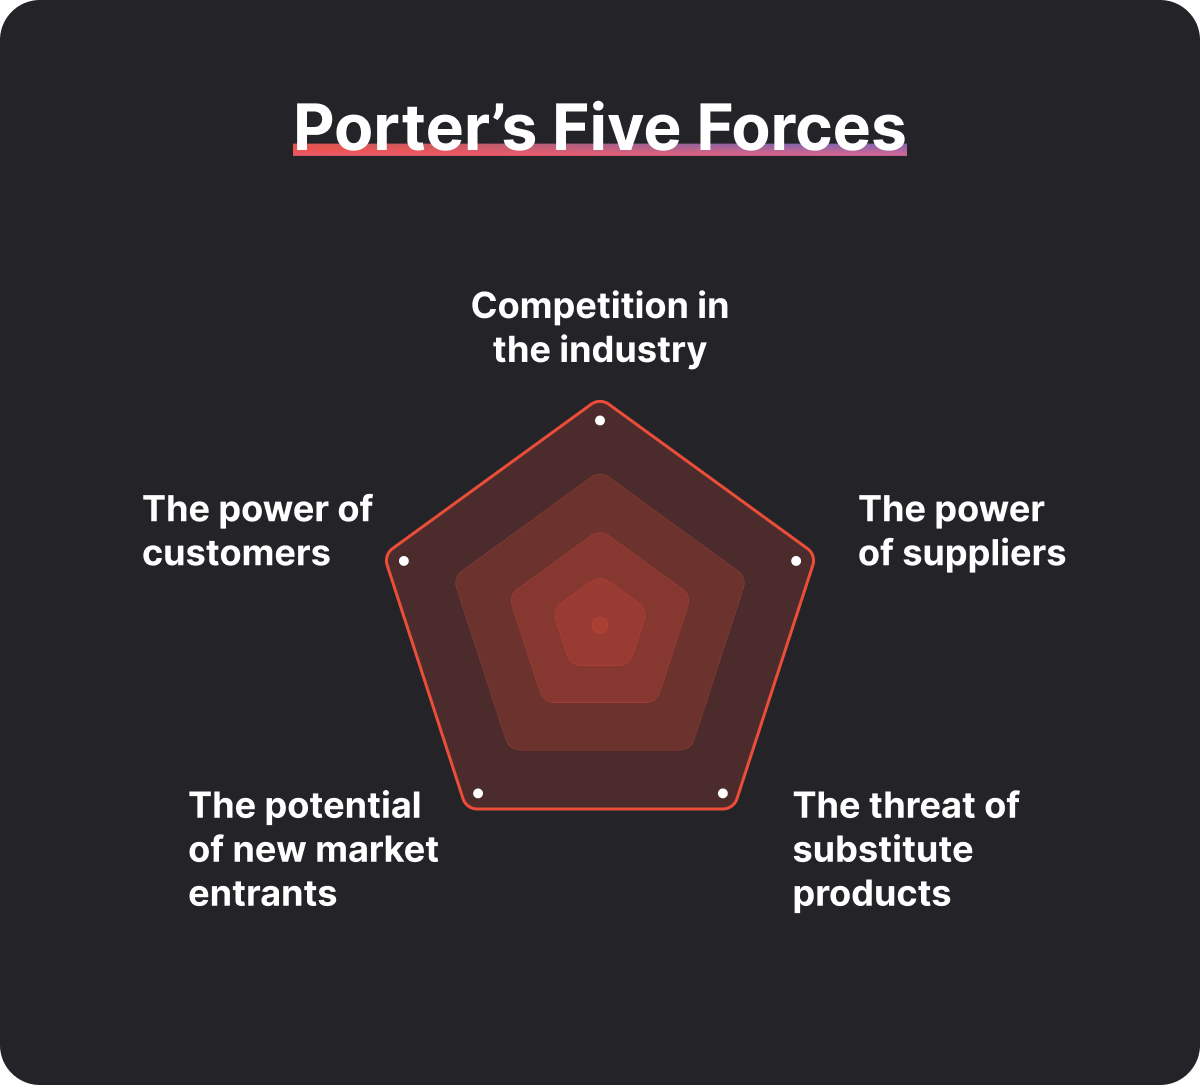 Illustration of Porter's Five Forces